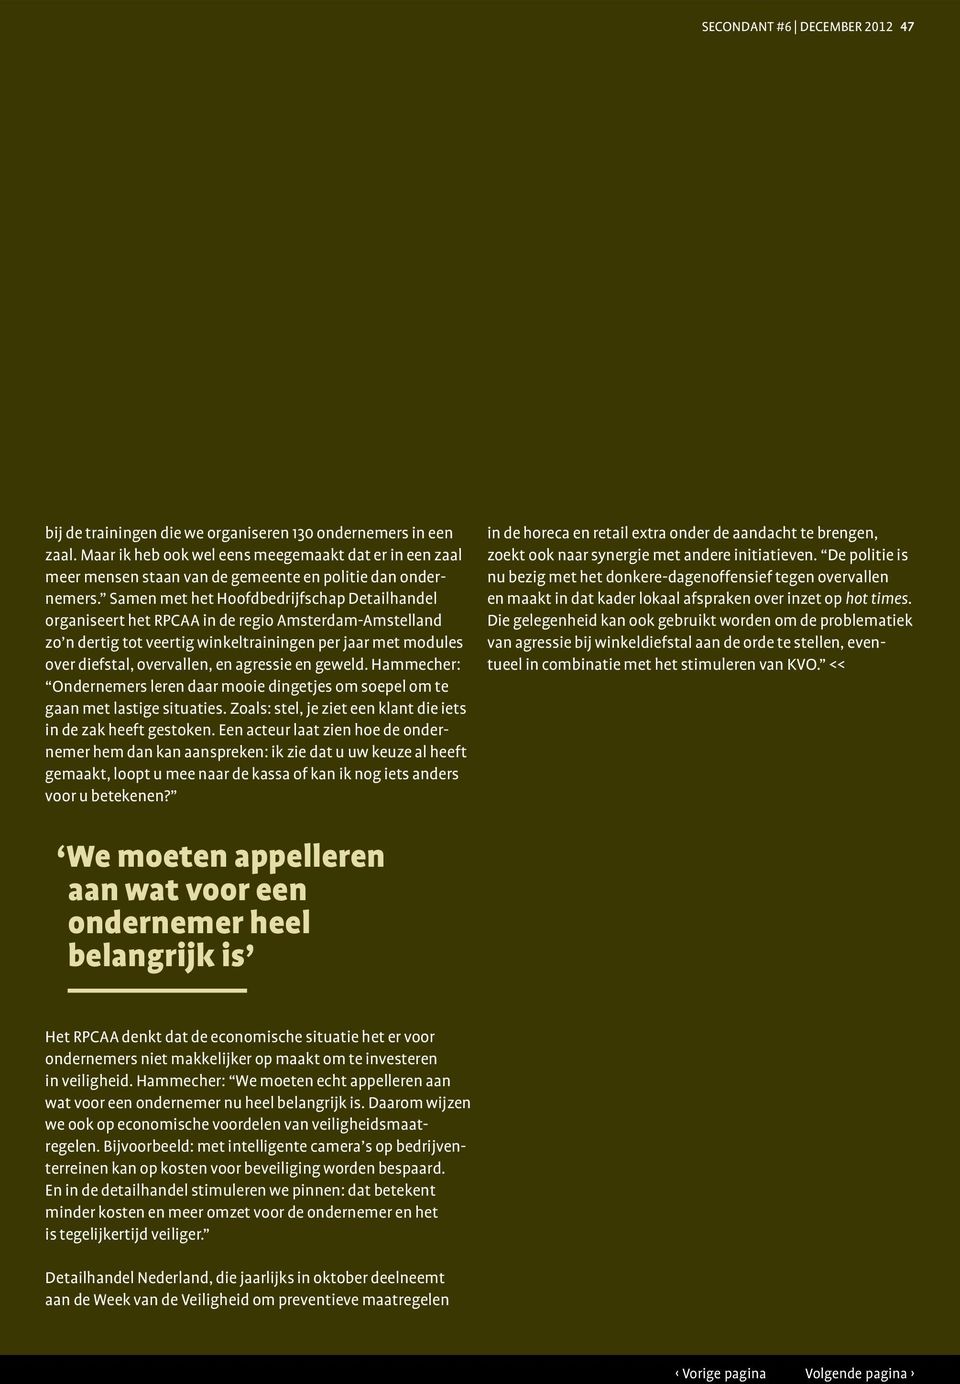 Samen met het Hoofdbedrijfschap Detailhandel organiseert het RPCAA in de regio Amsterdam-Amstelland zo n dertig tot veertig winkeltrainingen per jaar met modules over diefstal, overvallen, en